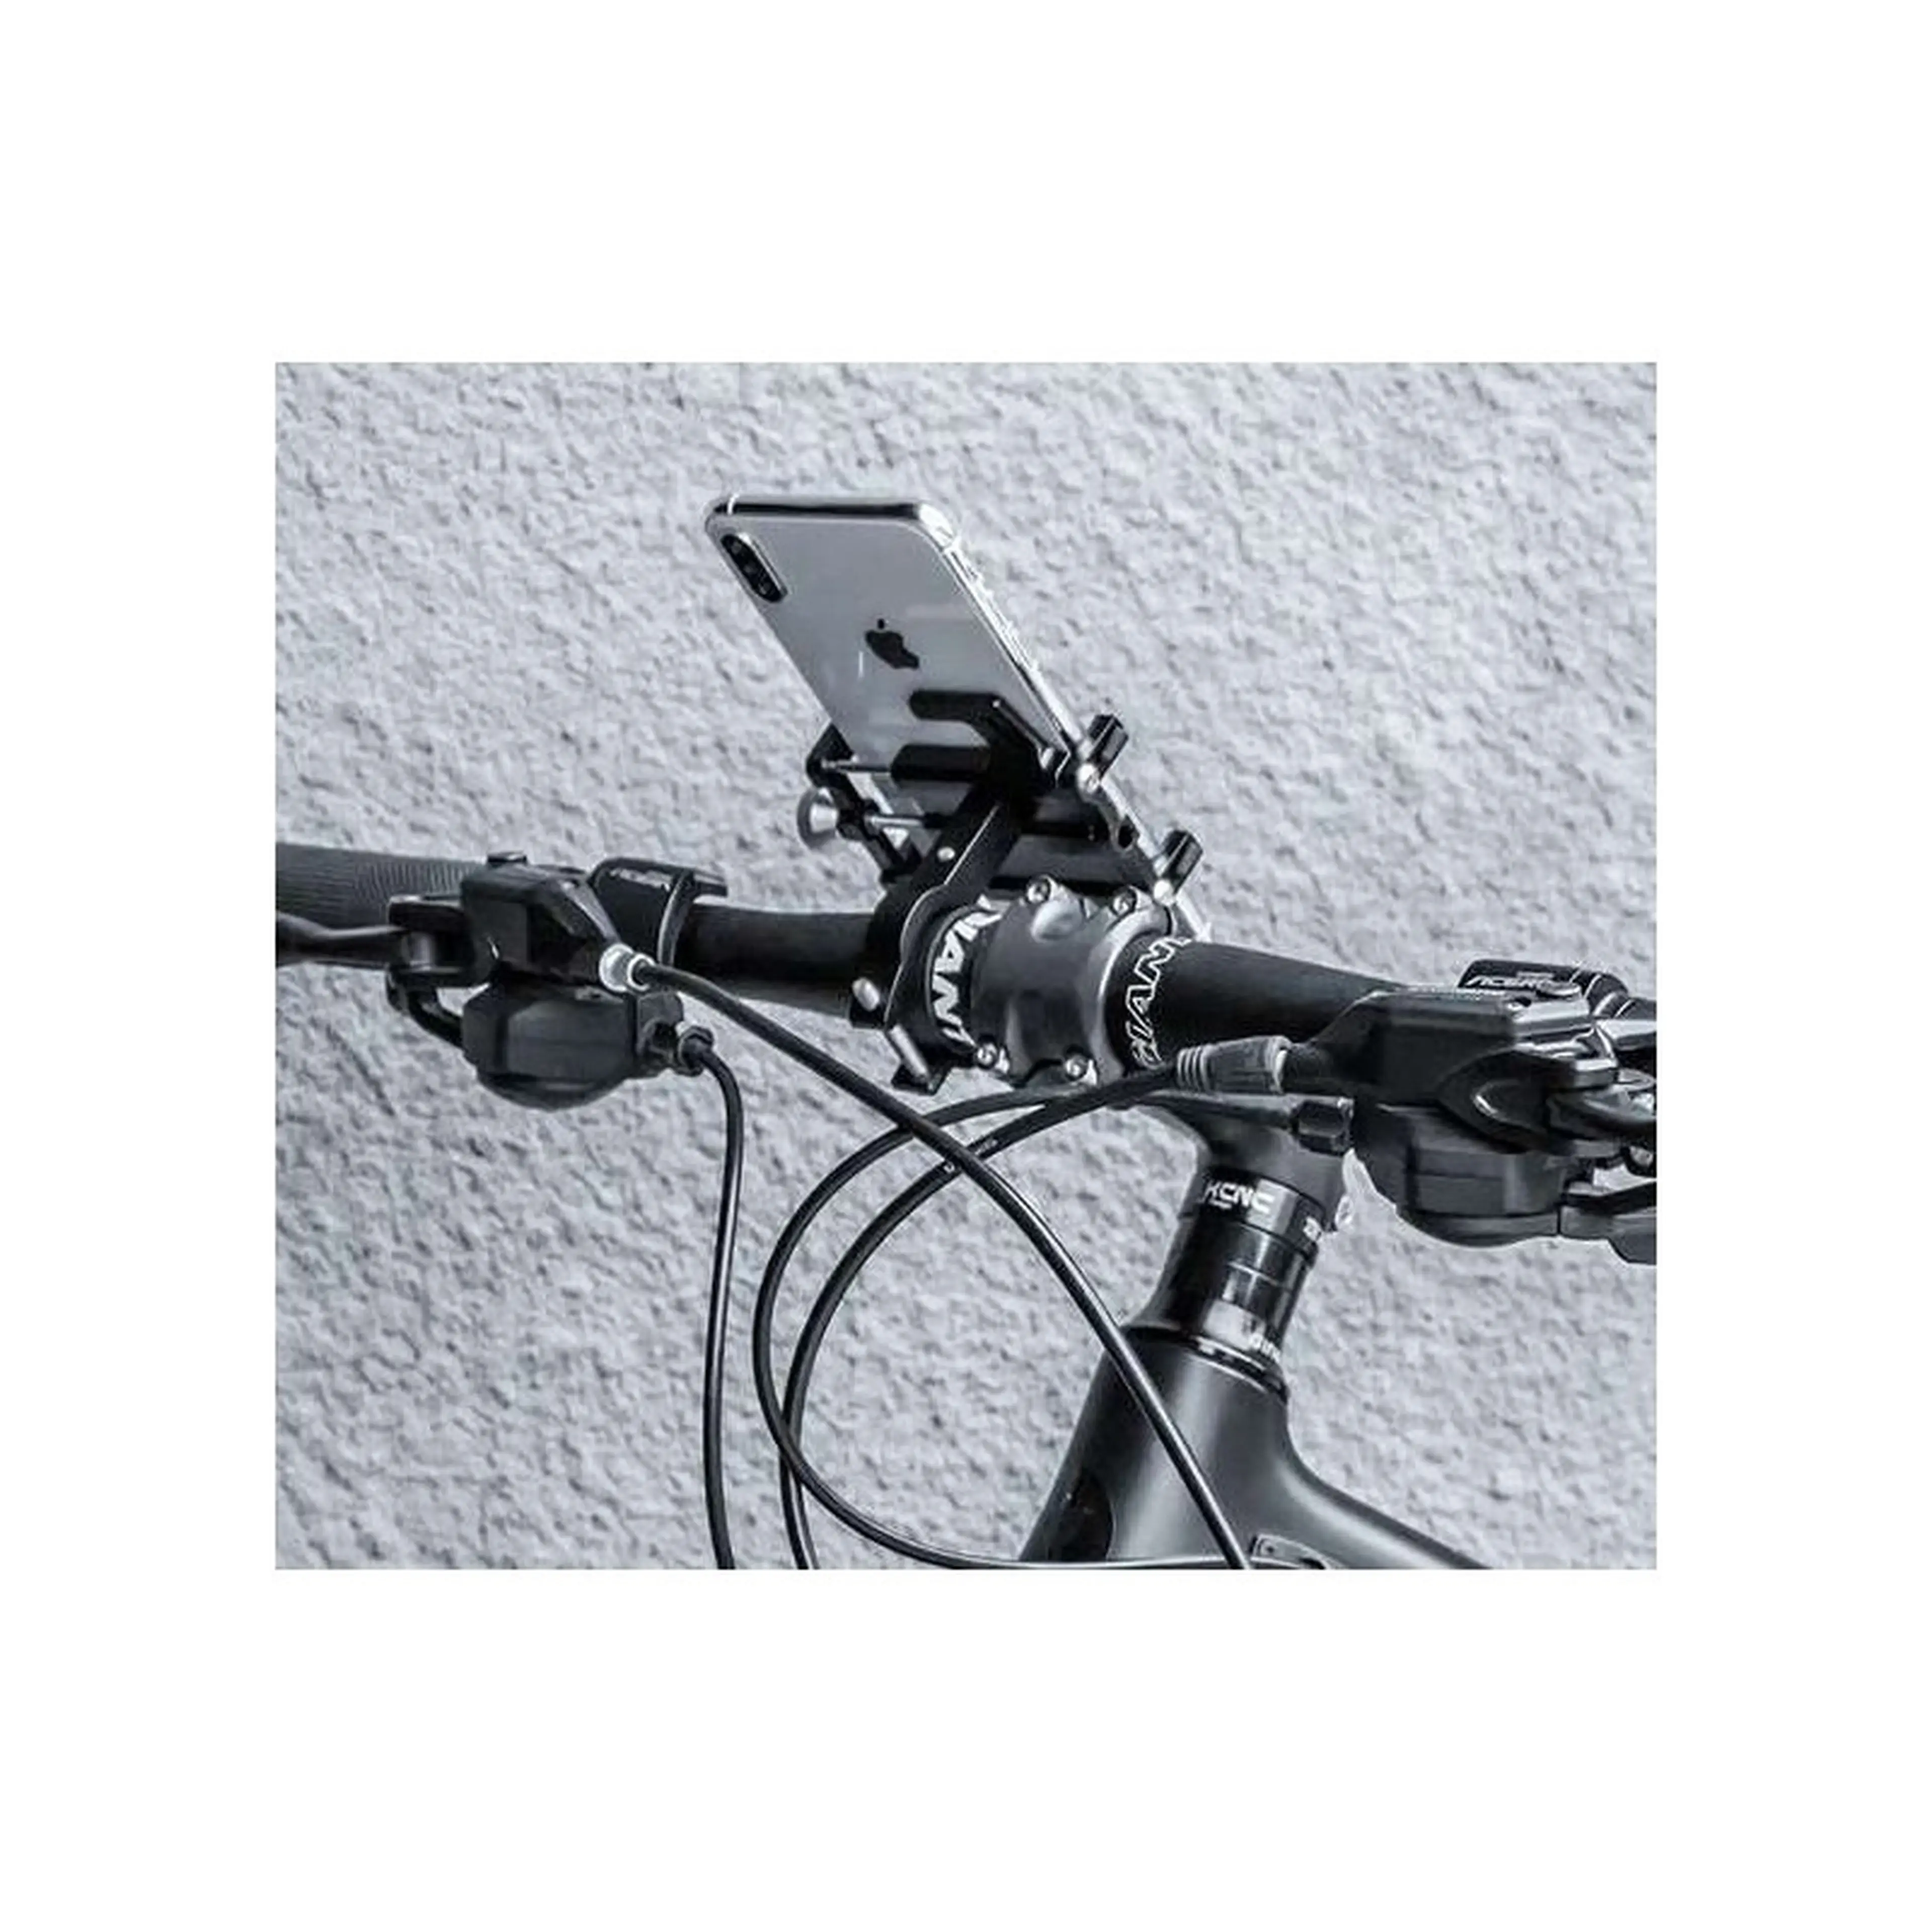 1. Suport telefon pentru bicicleta cu elastic